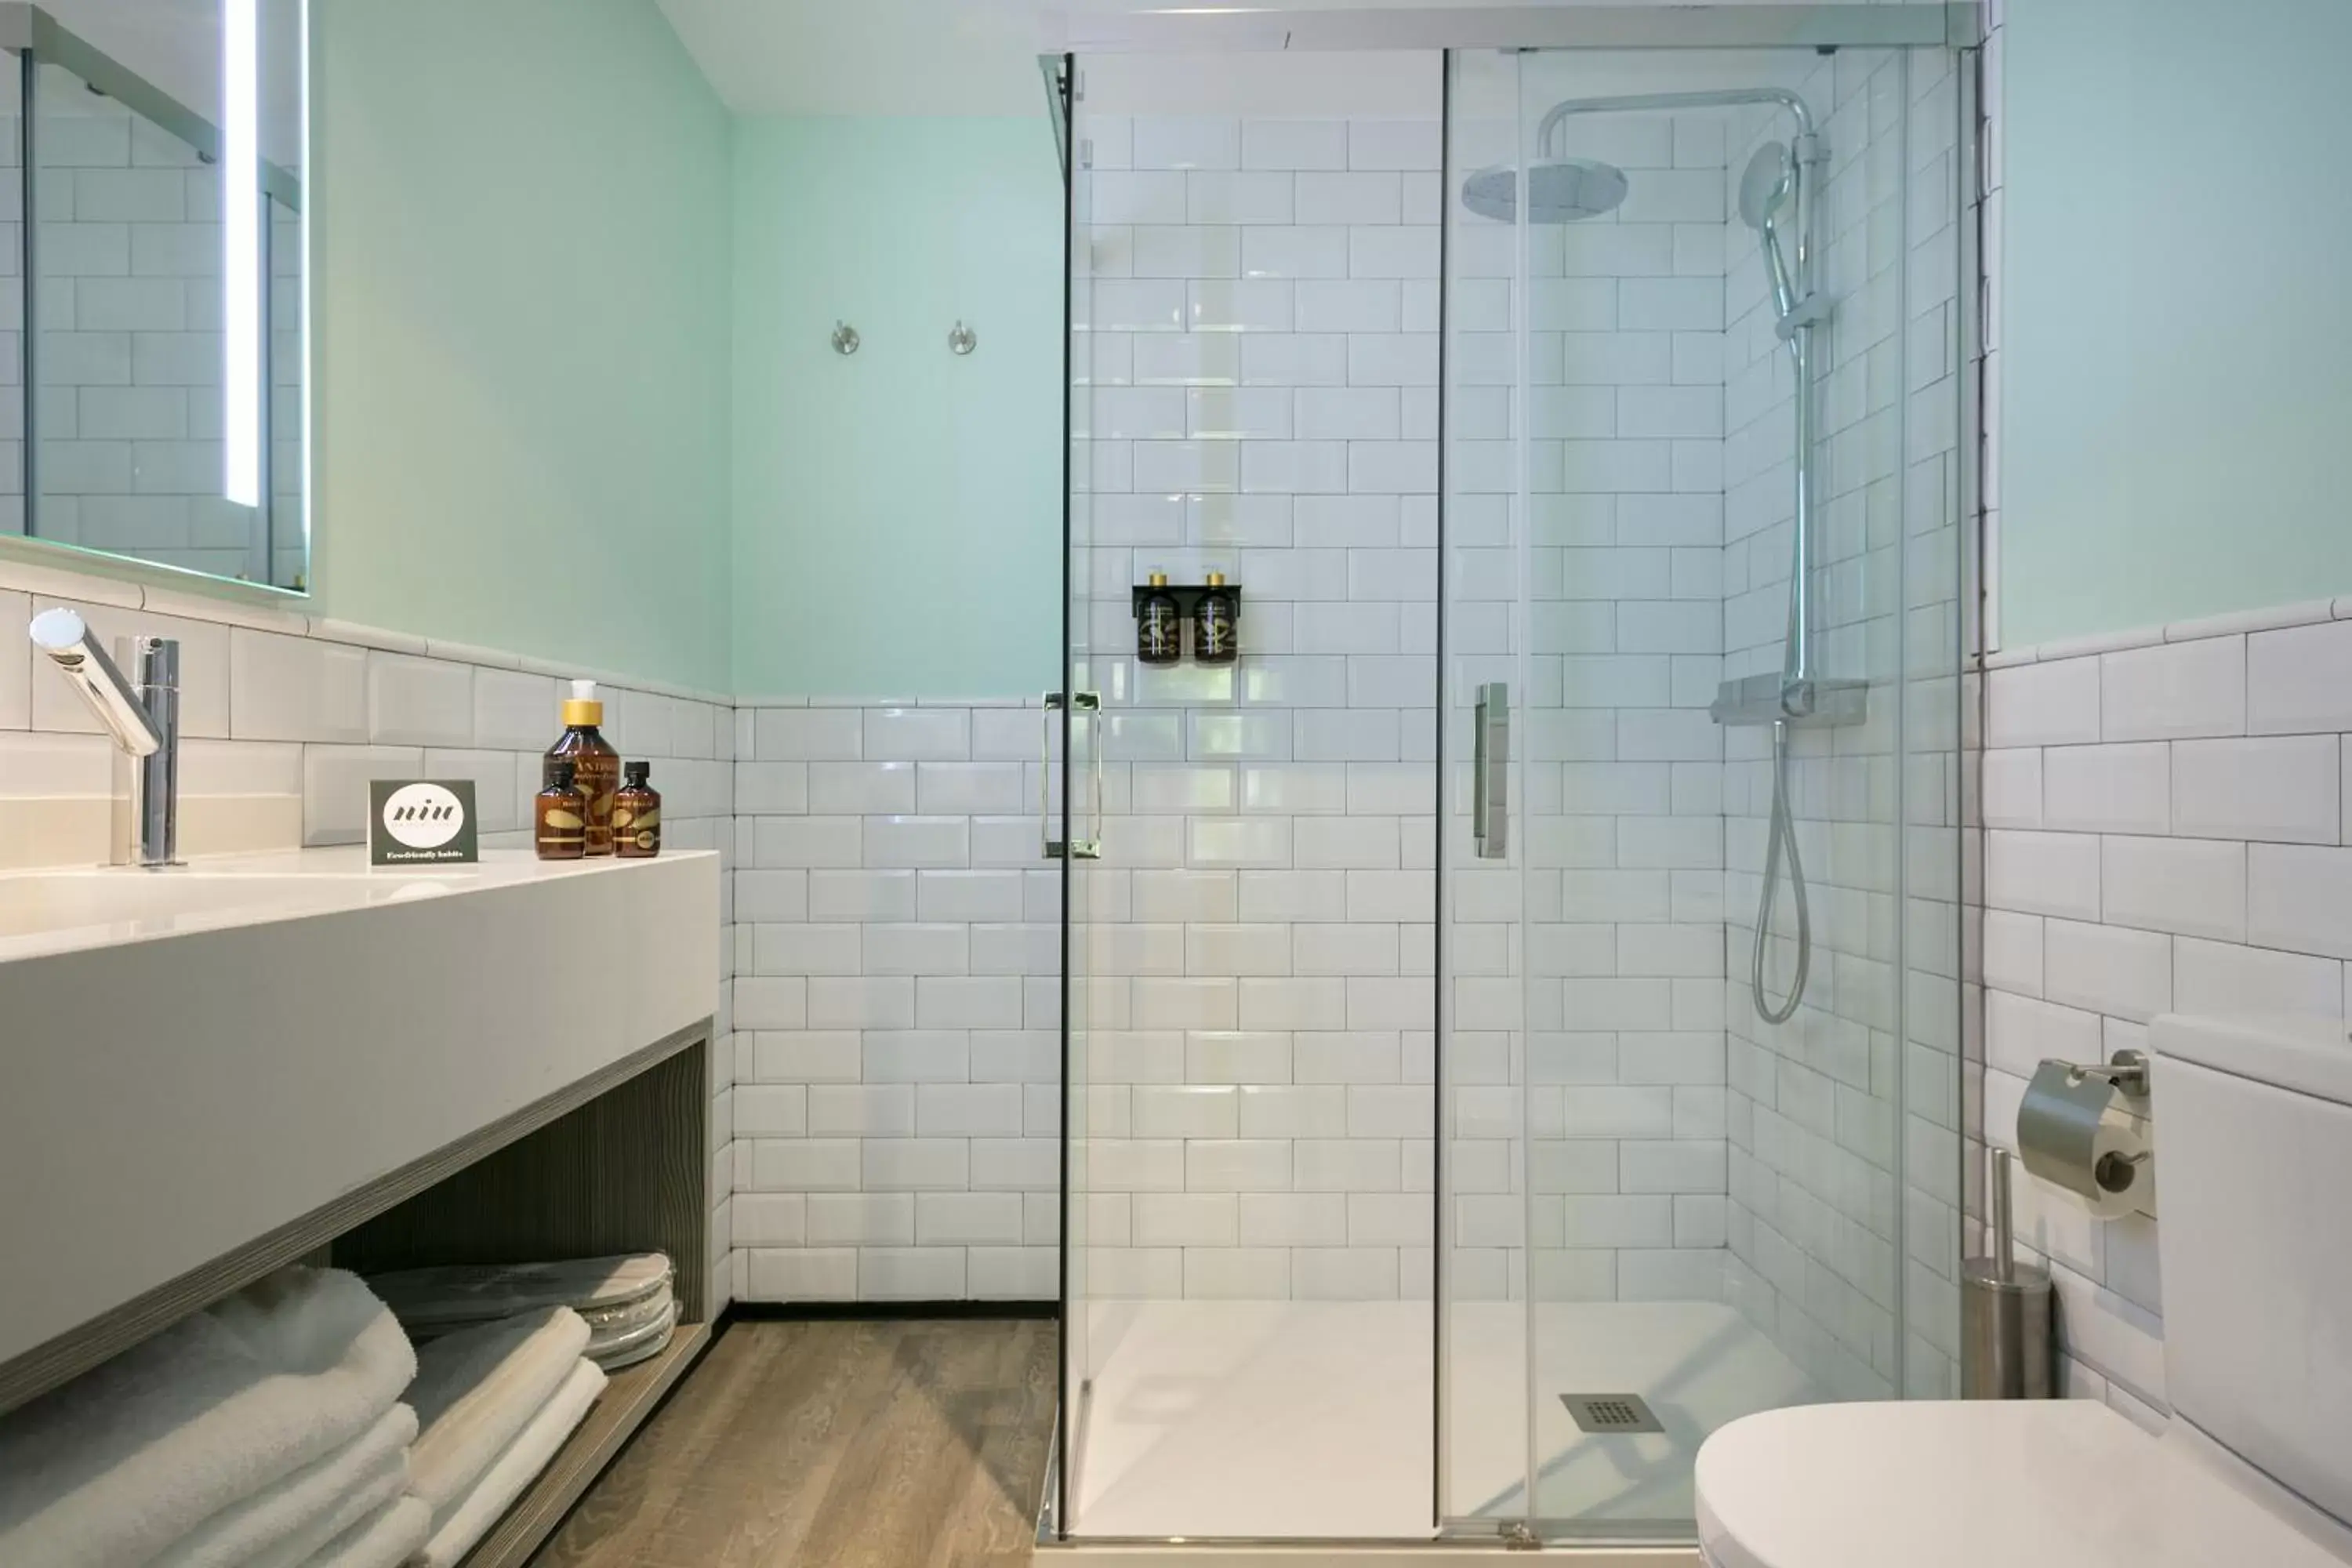 Bathroom in Niu Barcelona Hotel